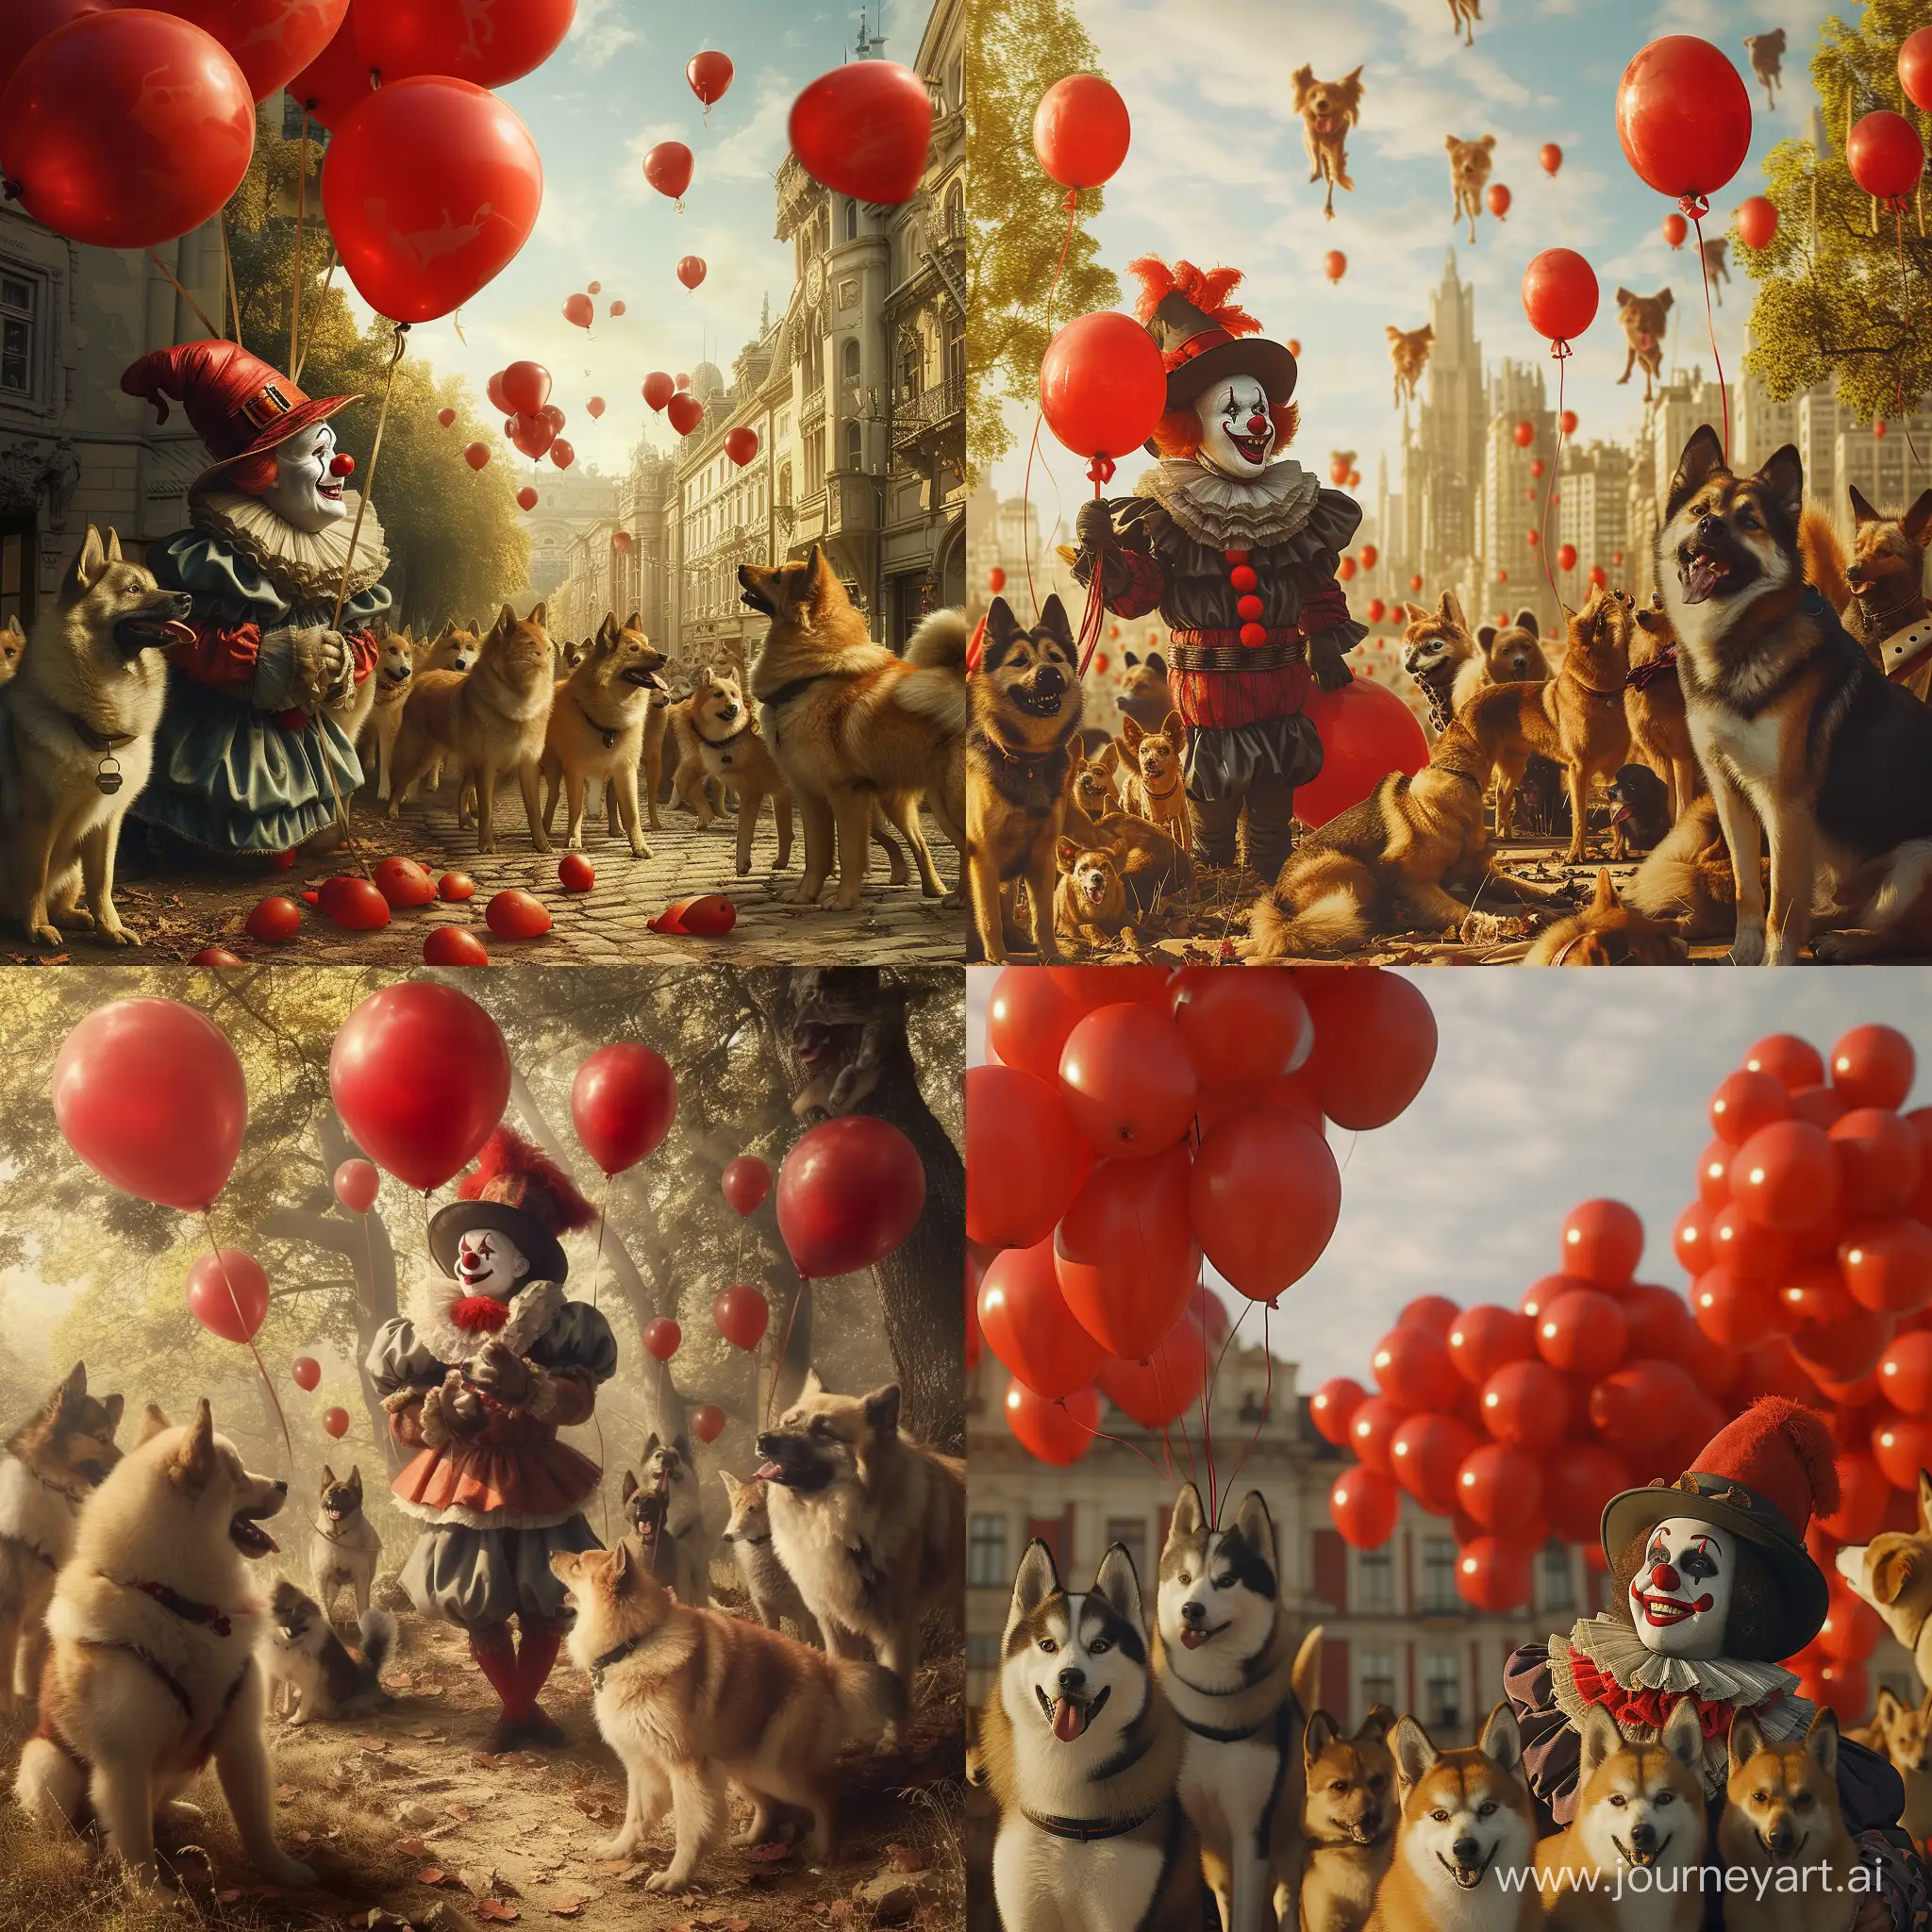 Клоун в шляпе в руках держит красные воздушные шарики, а вокруг много собак породы шпиц, гиперреализм, большая детализация, дневной свет